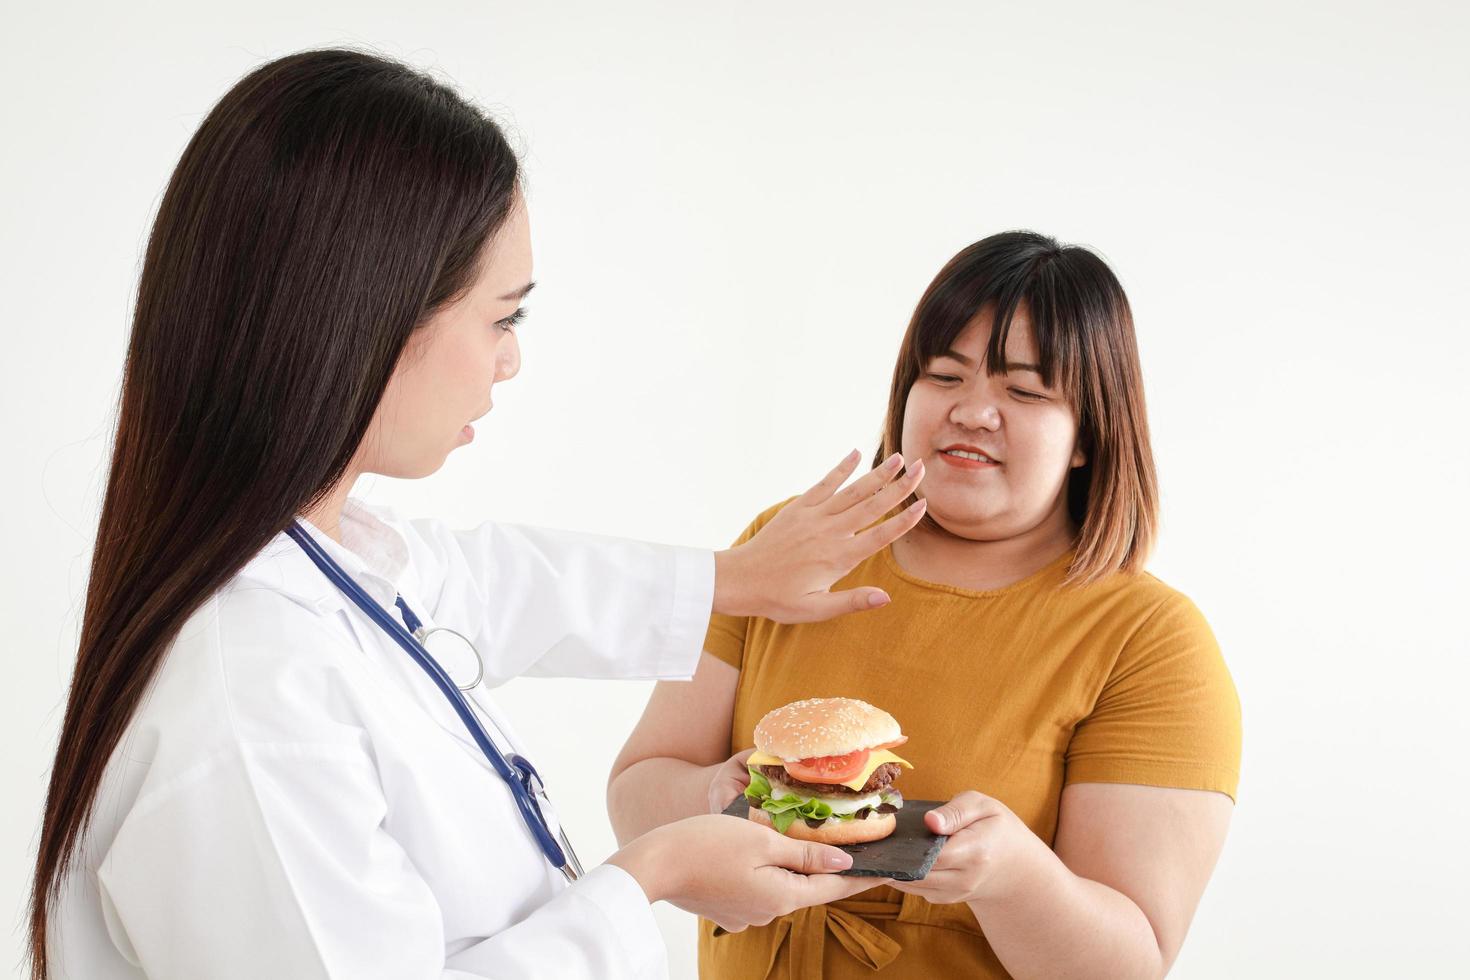 Eine Ärztin hält einen Hamburger für eine dicke Frau. weißer Hintergrund. Konzept der Gewichtskontrolle. diätetische Betreuung adipöser Patienten. gute Gesundheit zu haben foto